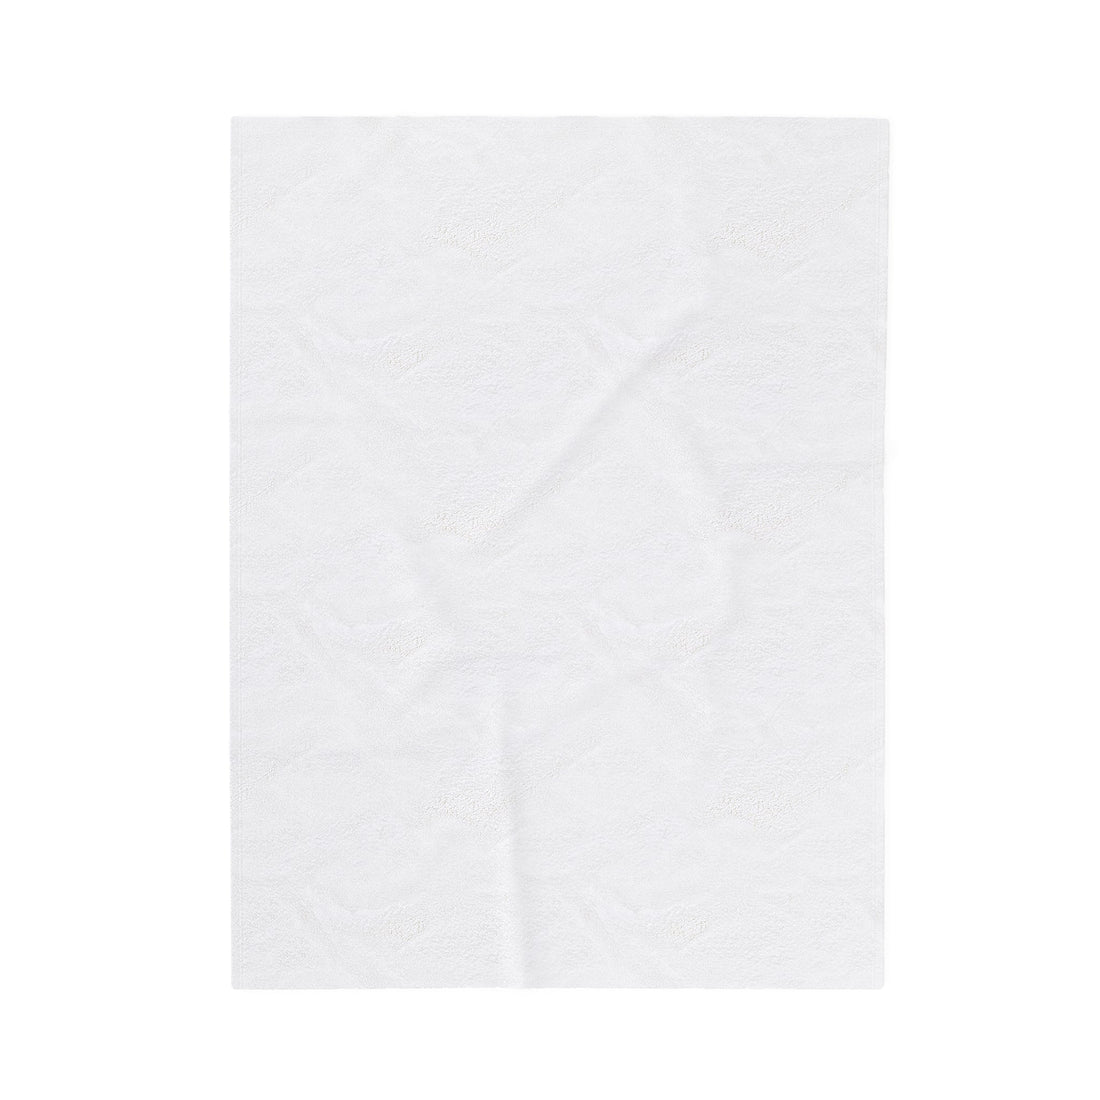 KC Velveteen Plush Blanket - All Over Prints - Positively Sassy - KC Velveteen Plush Blanket